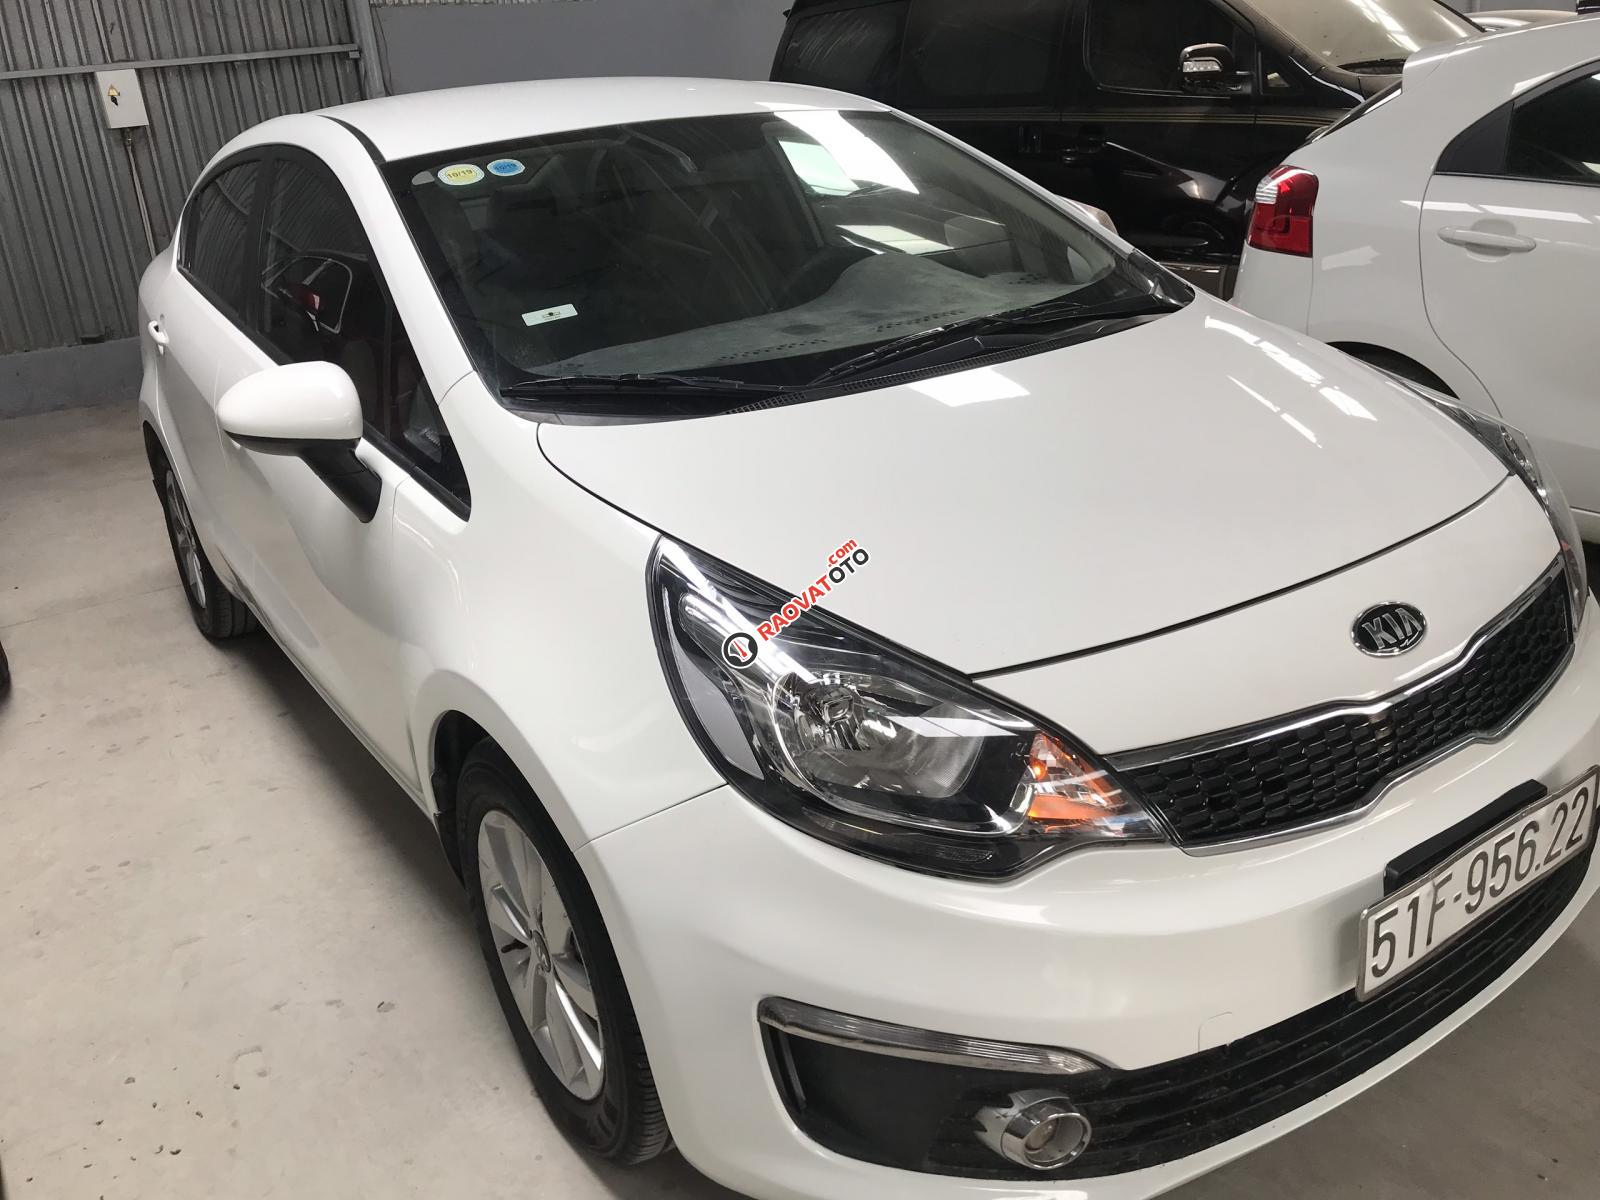 Bán Kia Rio sedan 1.4MT màu trắng, số sàn nhập Hàn Quốc 2016, biển Sài Gòn 1 chủ-0